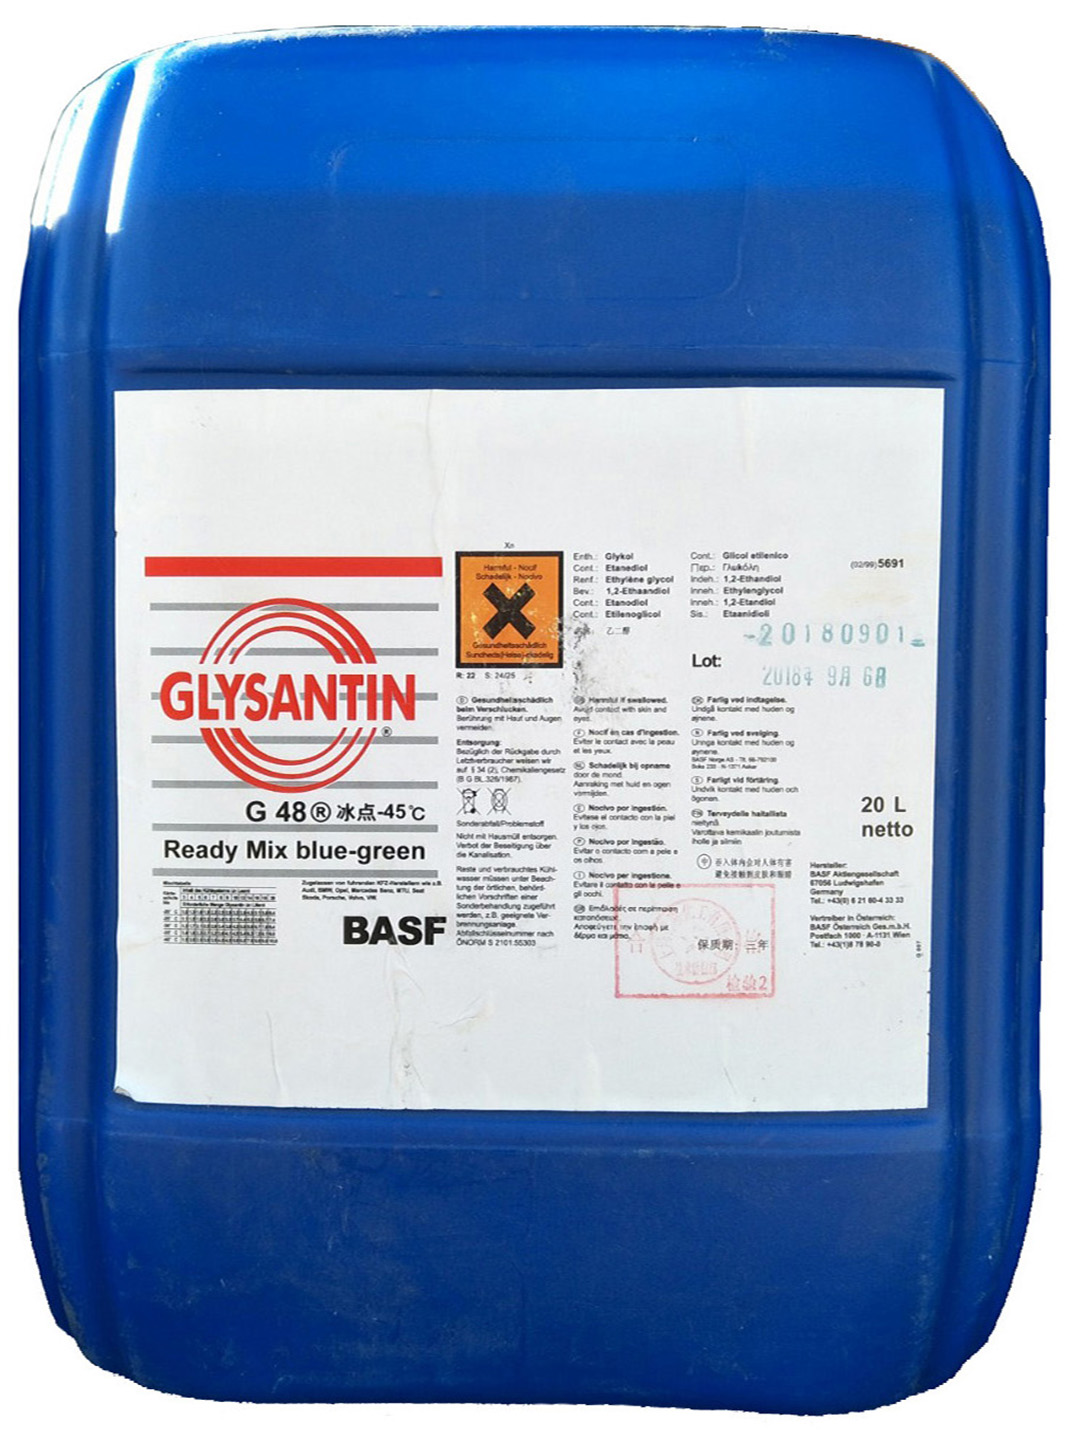 GLYSANTIN G48 Ready Mix blue-green